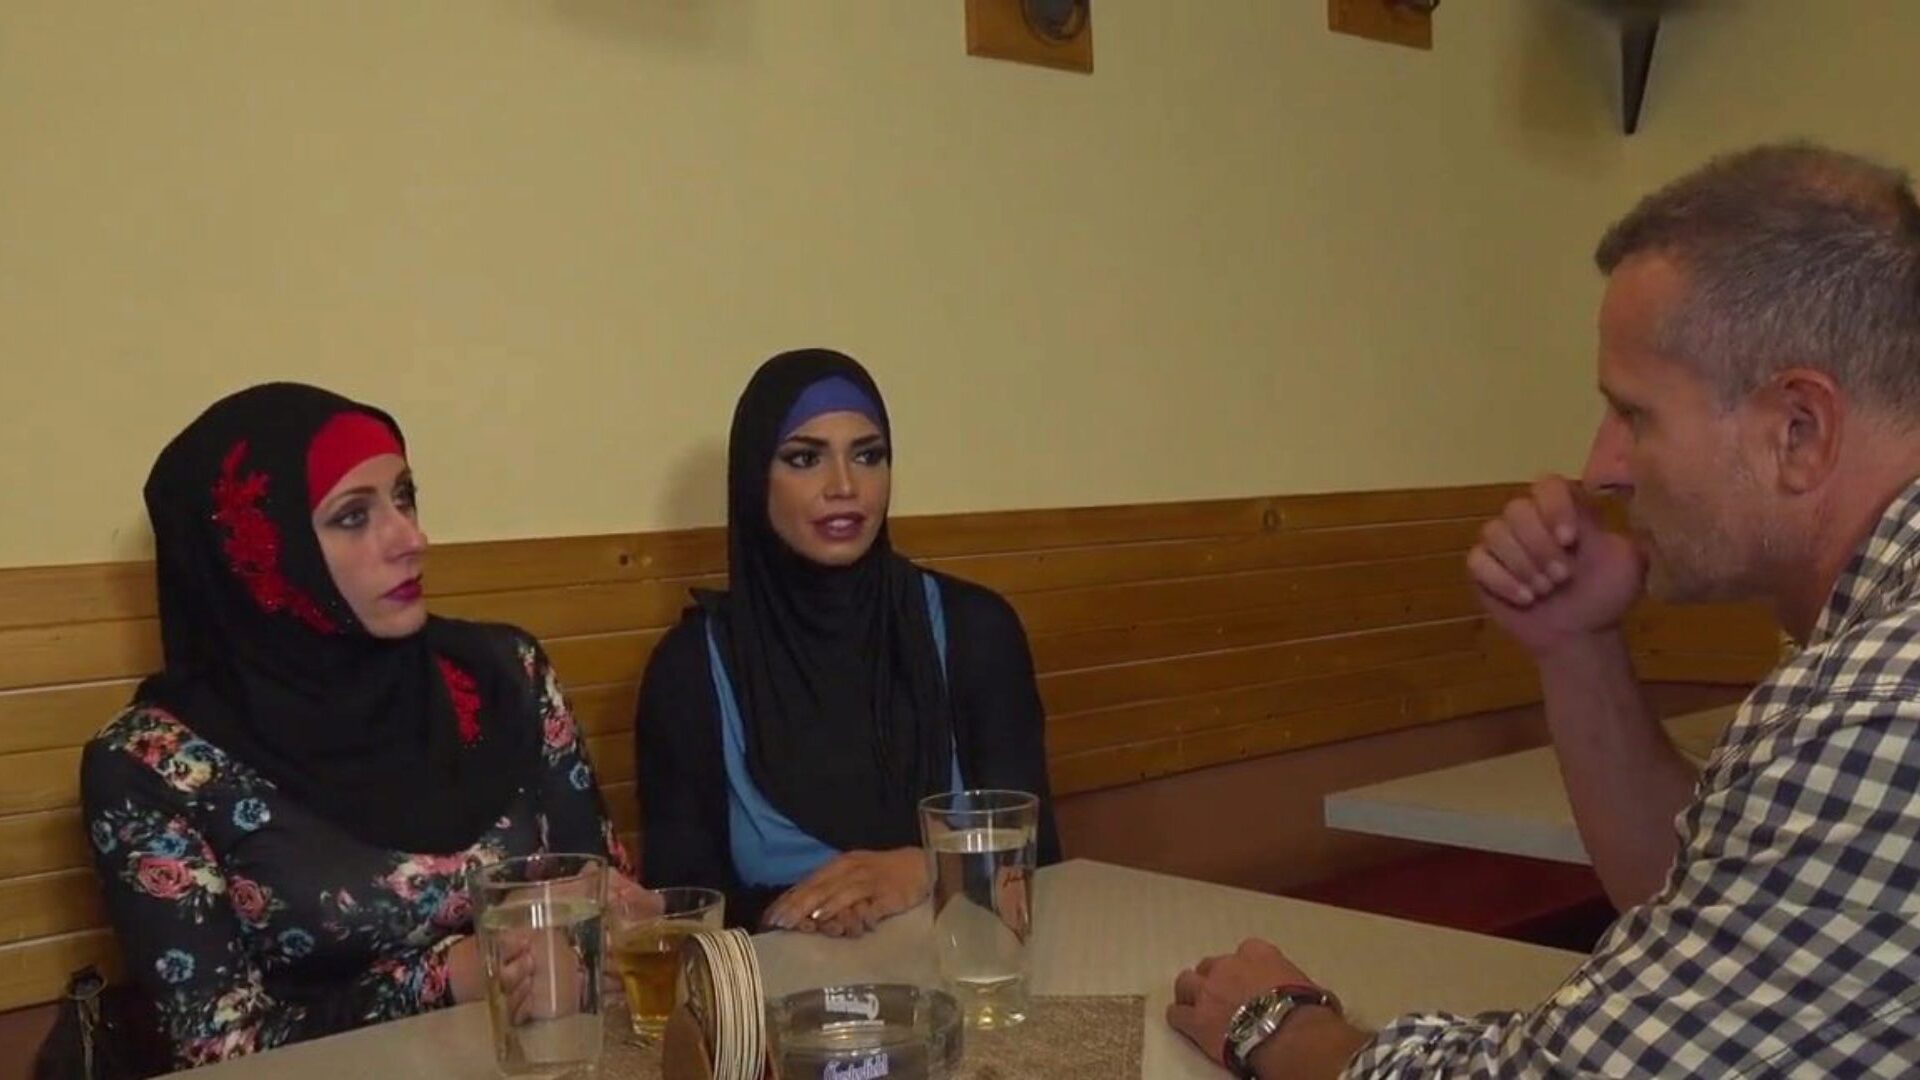 盖头穆斯林场景11，免费的穆斯林头巾高清色情a9在xhamster上观看盖头穆斯林场景11的视频，这是最厚的高清转播网站，上面有大量免费的阿拉伯穆斯林盖头和阿拉伯头巾色情电影